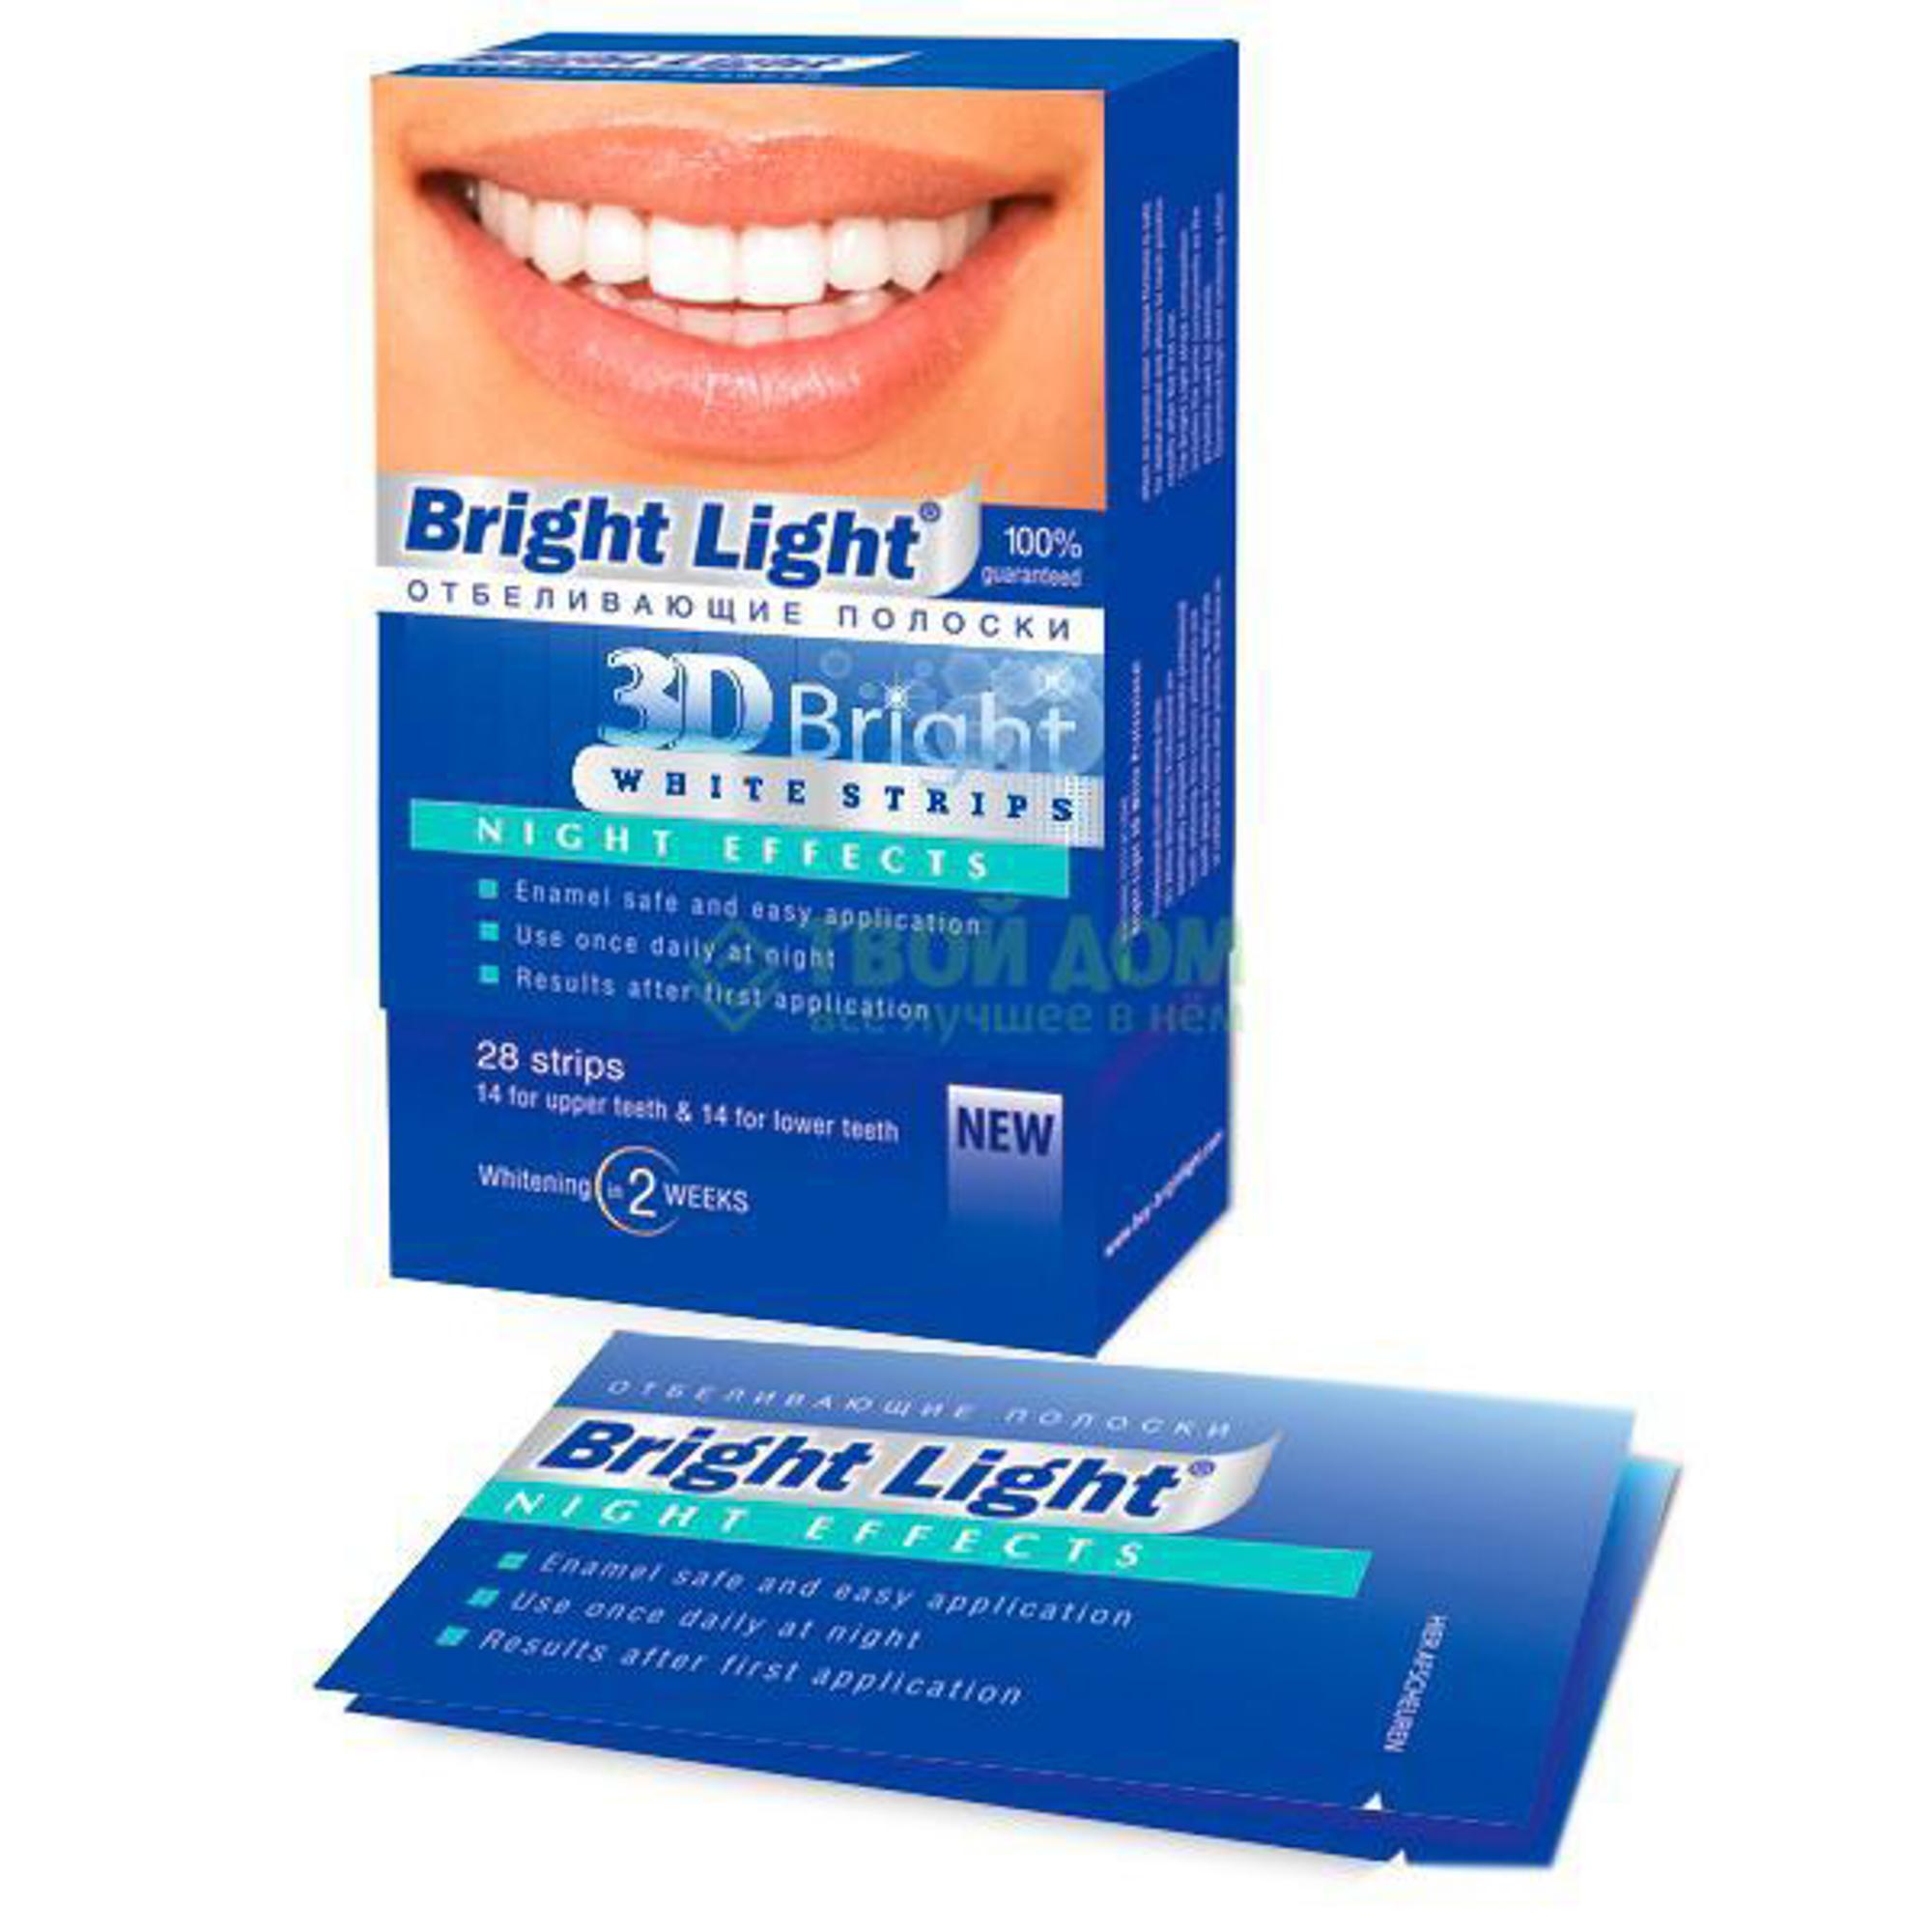 Для зубов отзывы врачей. Bright Light отбеливающие полоски 3d Bright perfect Effects. Bright Light "3d Bright professional Effects". Полоски для отбеливания зубов 3д.